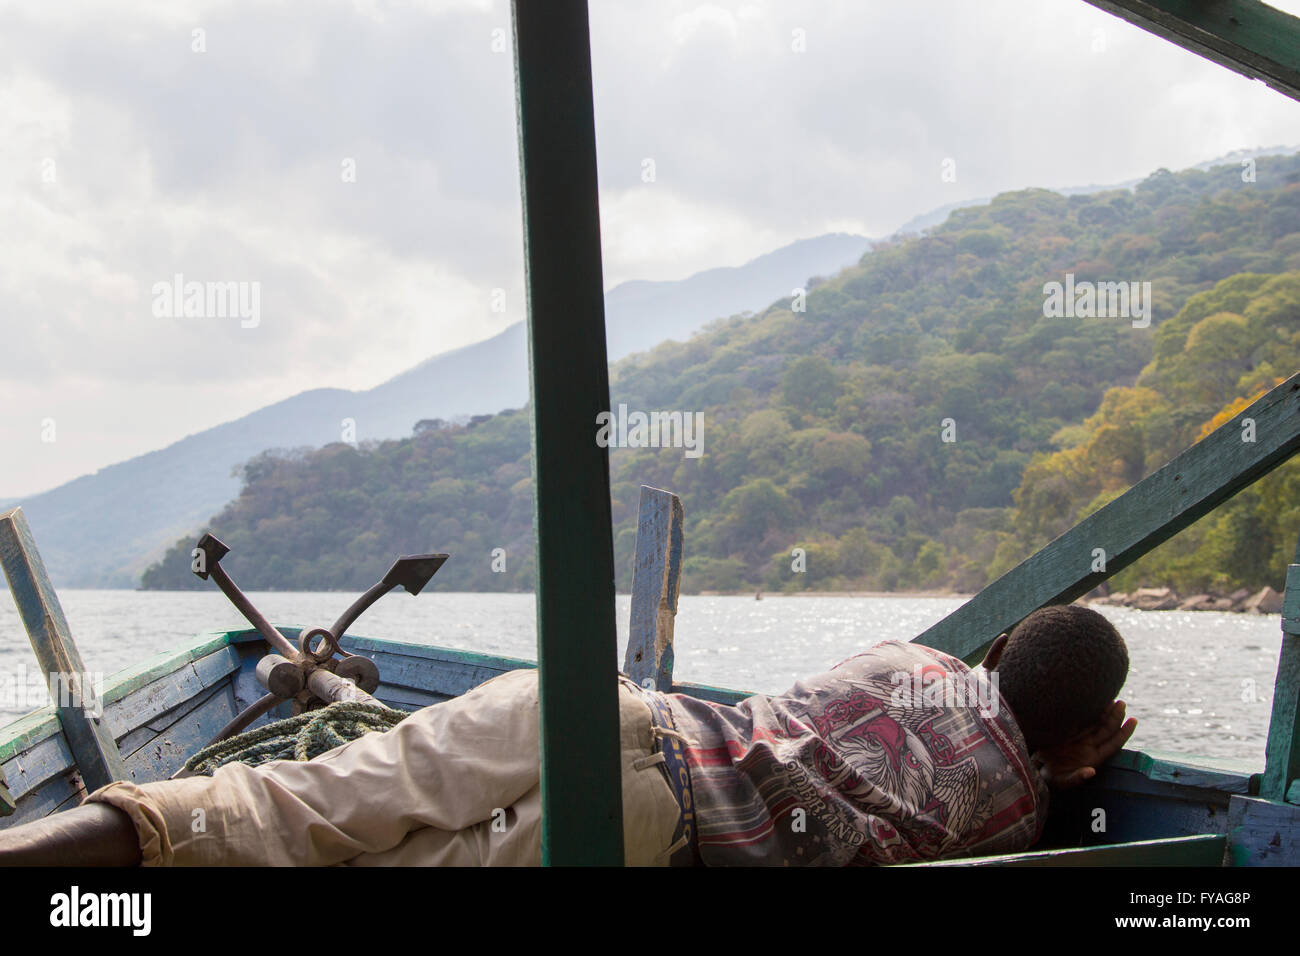 Méconnaissable african man sleeping on bateau flottant contre de vertes collines et ciel nuageux le long du lac Tanganyika, en Tanzanie Banque D'Images